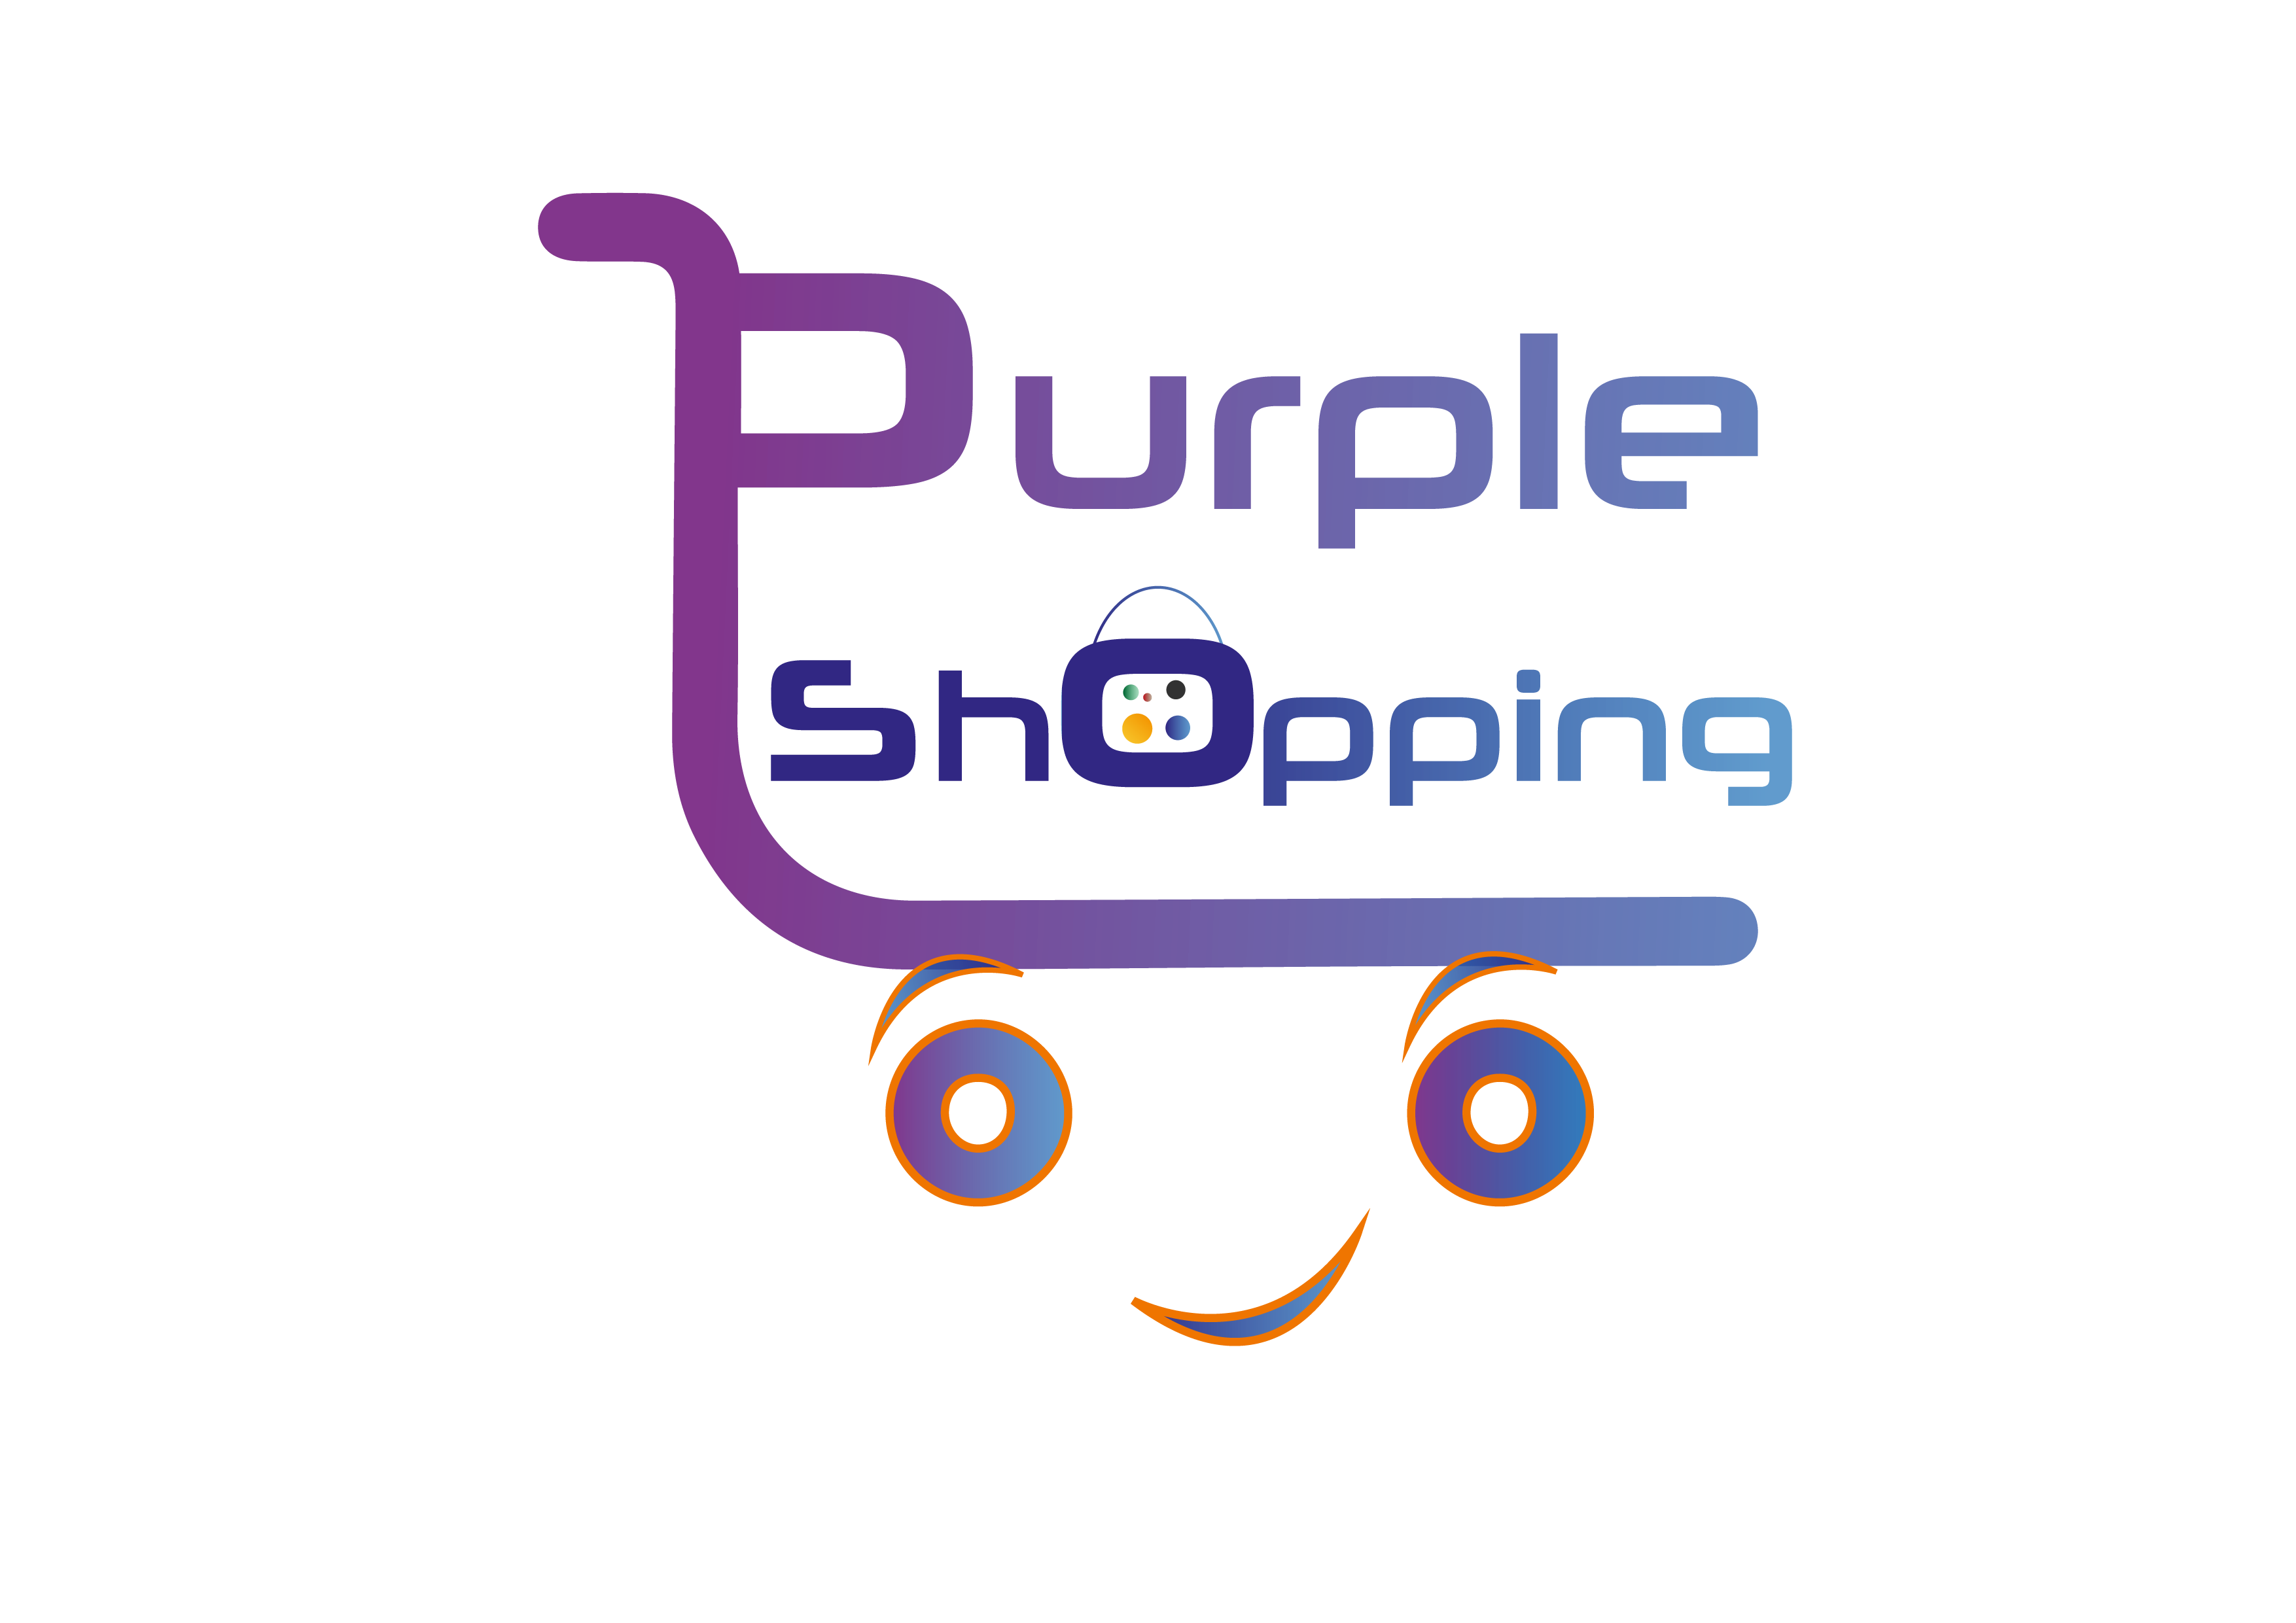 PurpleShopping